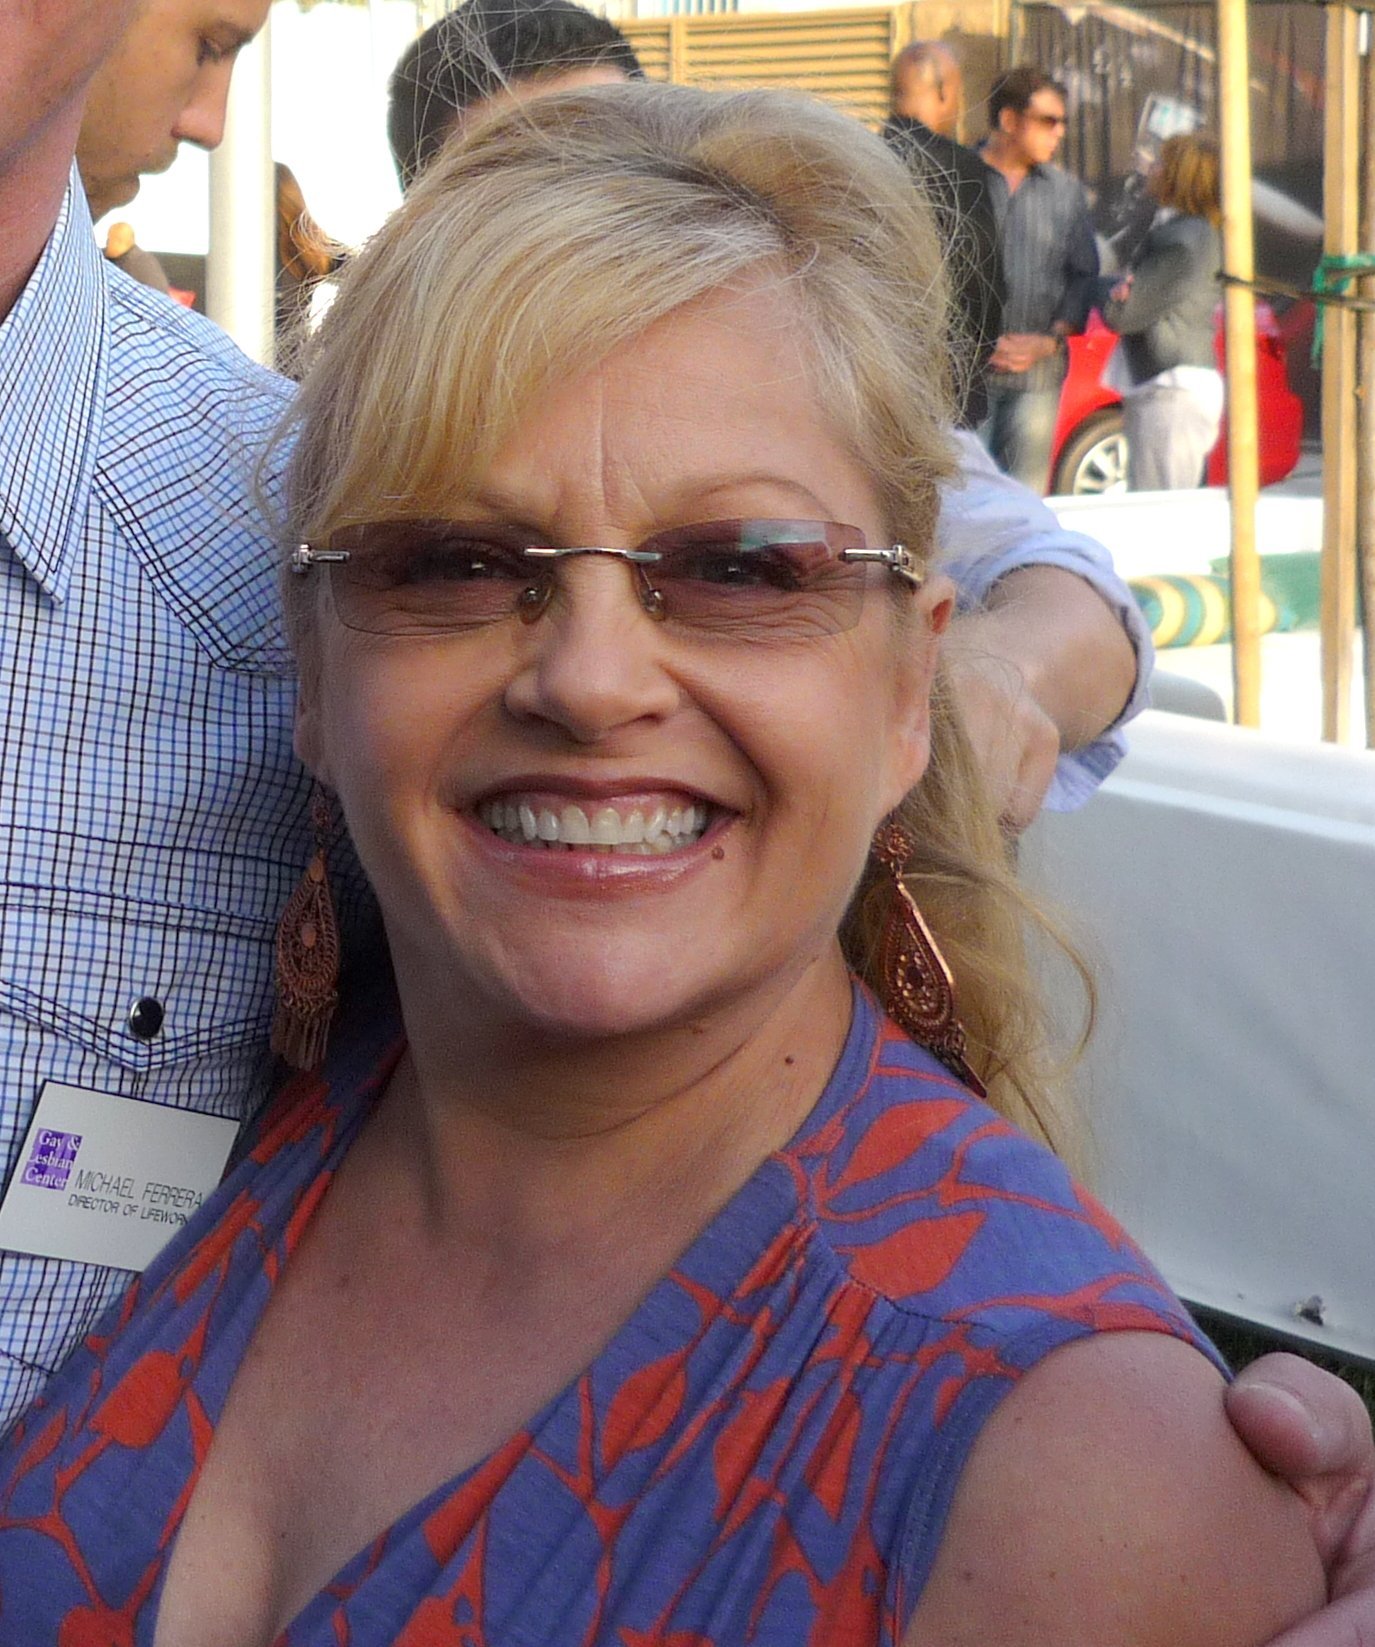 Charlene Tilton in 2010. | Photo: Wikimedia Commons